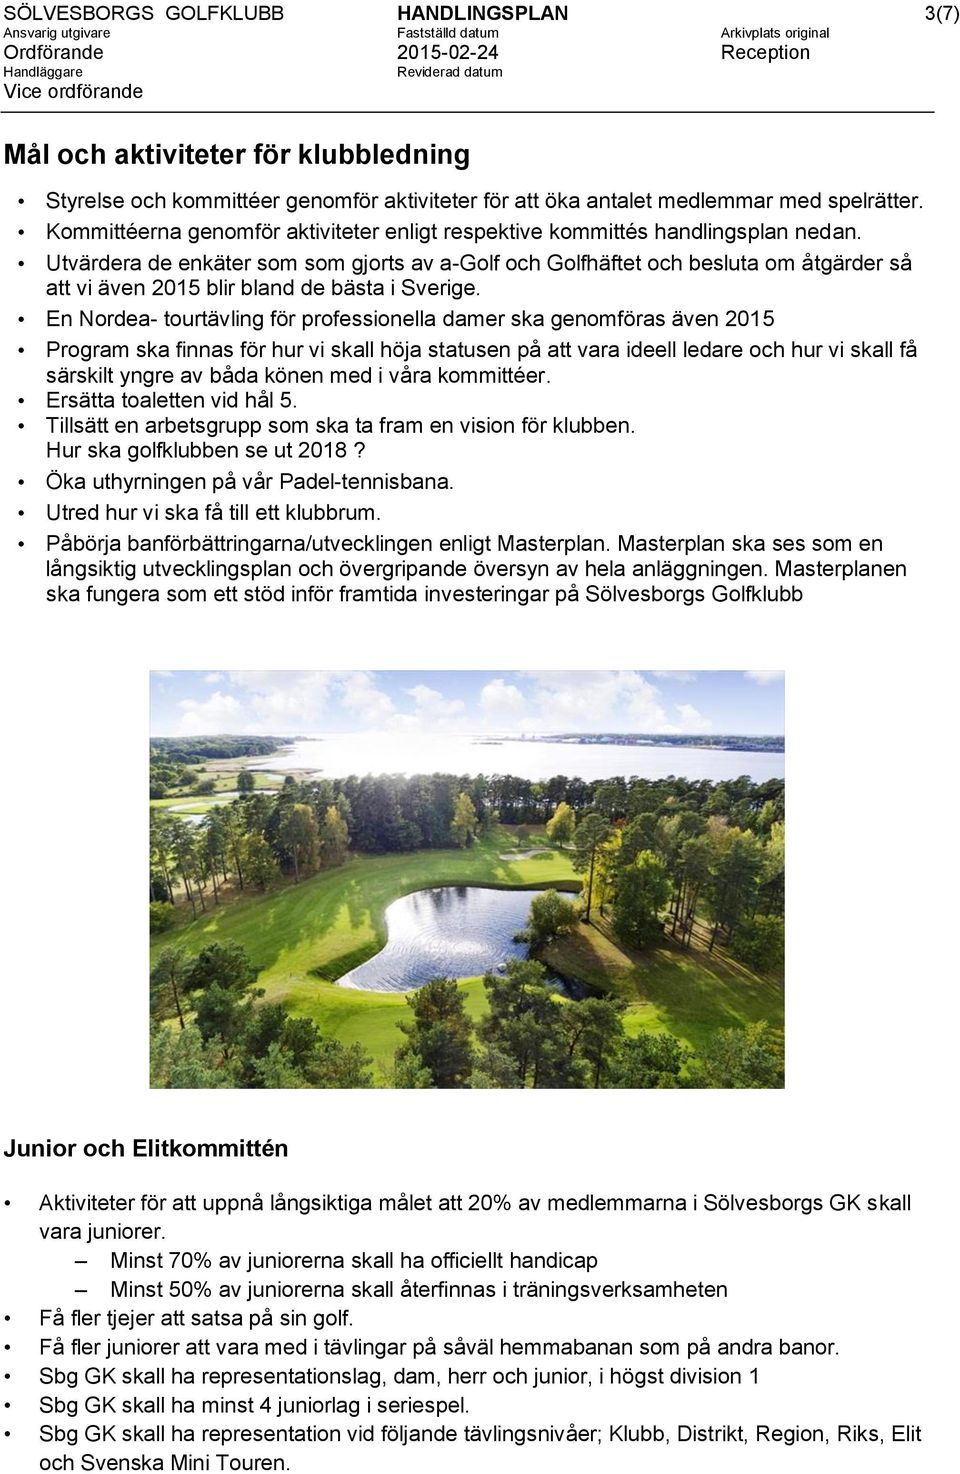 Utvärdera de enkäter som som gjorts av a-golf och Golfhäftet och besluta om åtgärder så att vi även 2015 blir bland de bästa i Sverige.